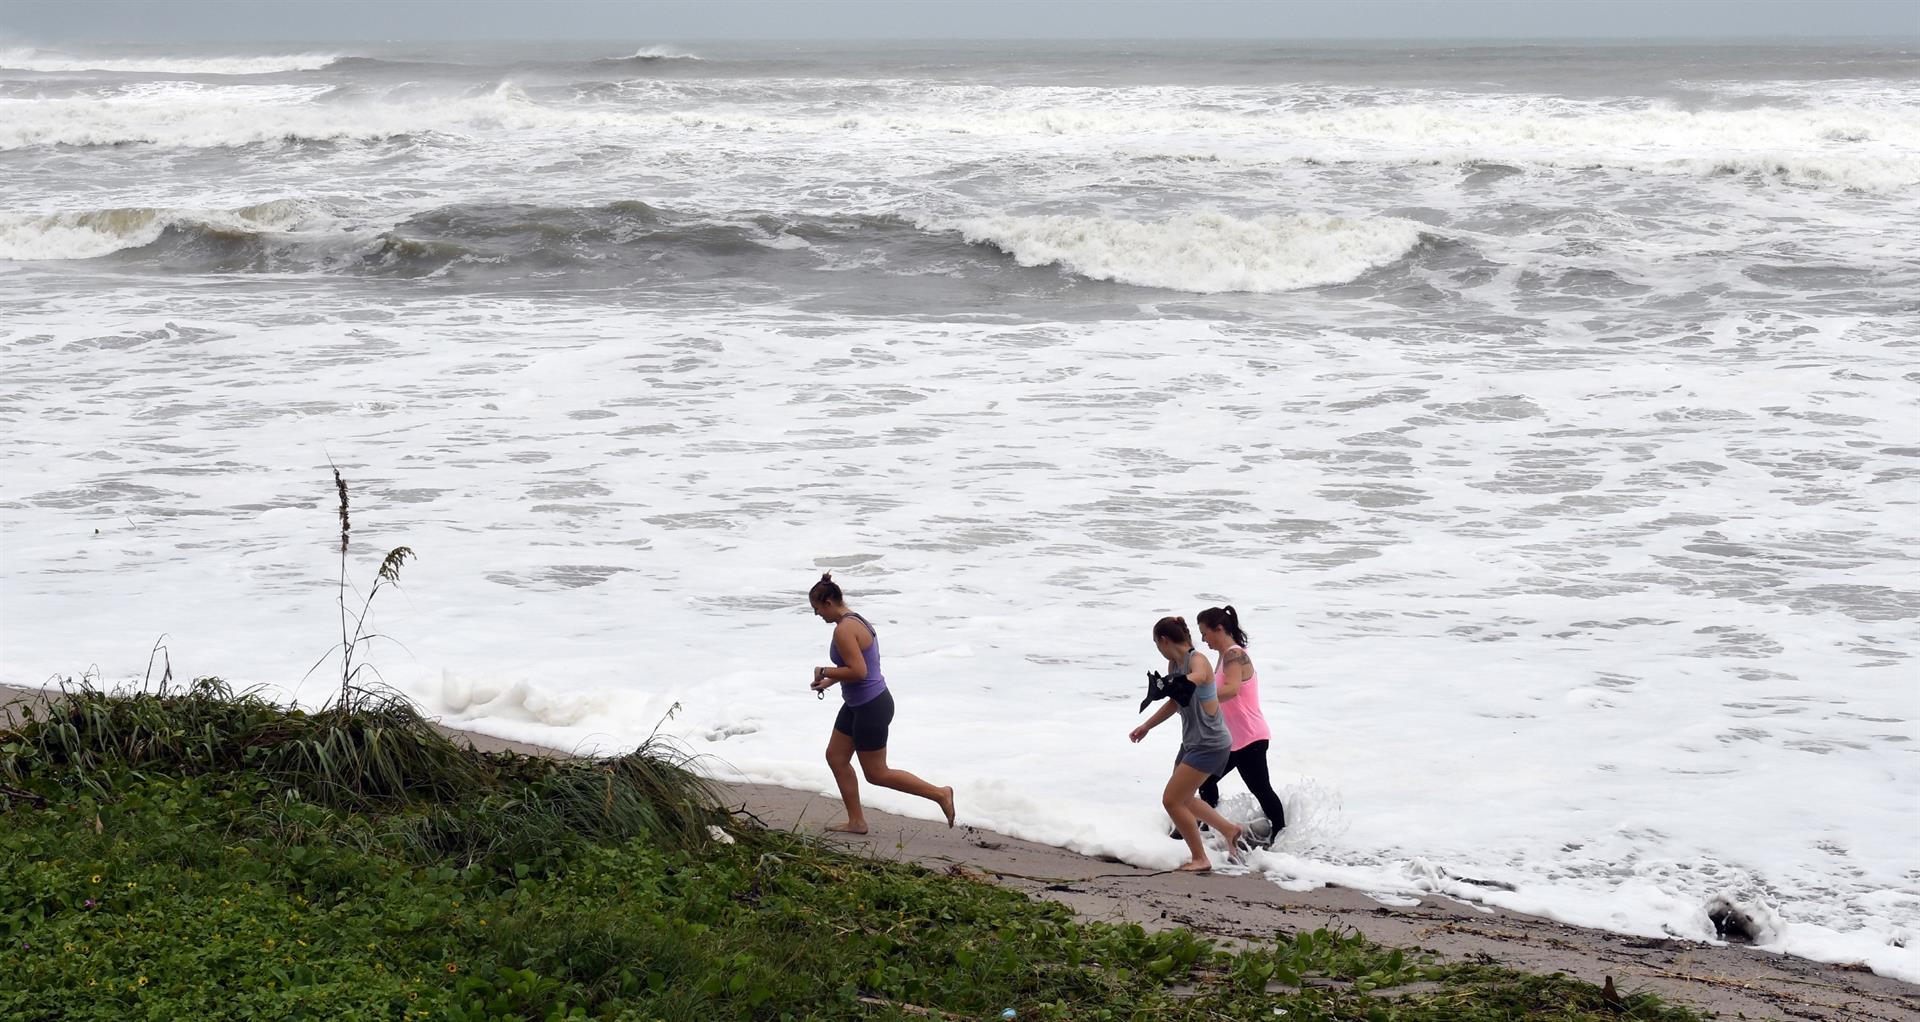 Curiosos caminan cerca de las olas que causa de un huracán en el paseo marítimo de Juno Beach, Florida (Estados Unidos). Imagen de archivo. EFE/ Jim Rassol
